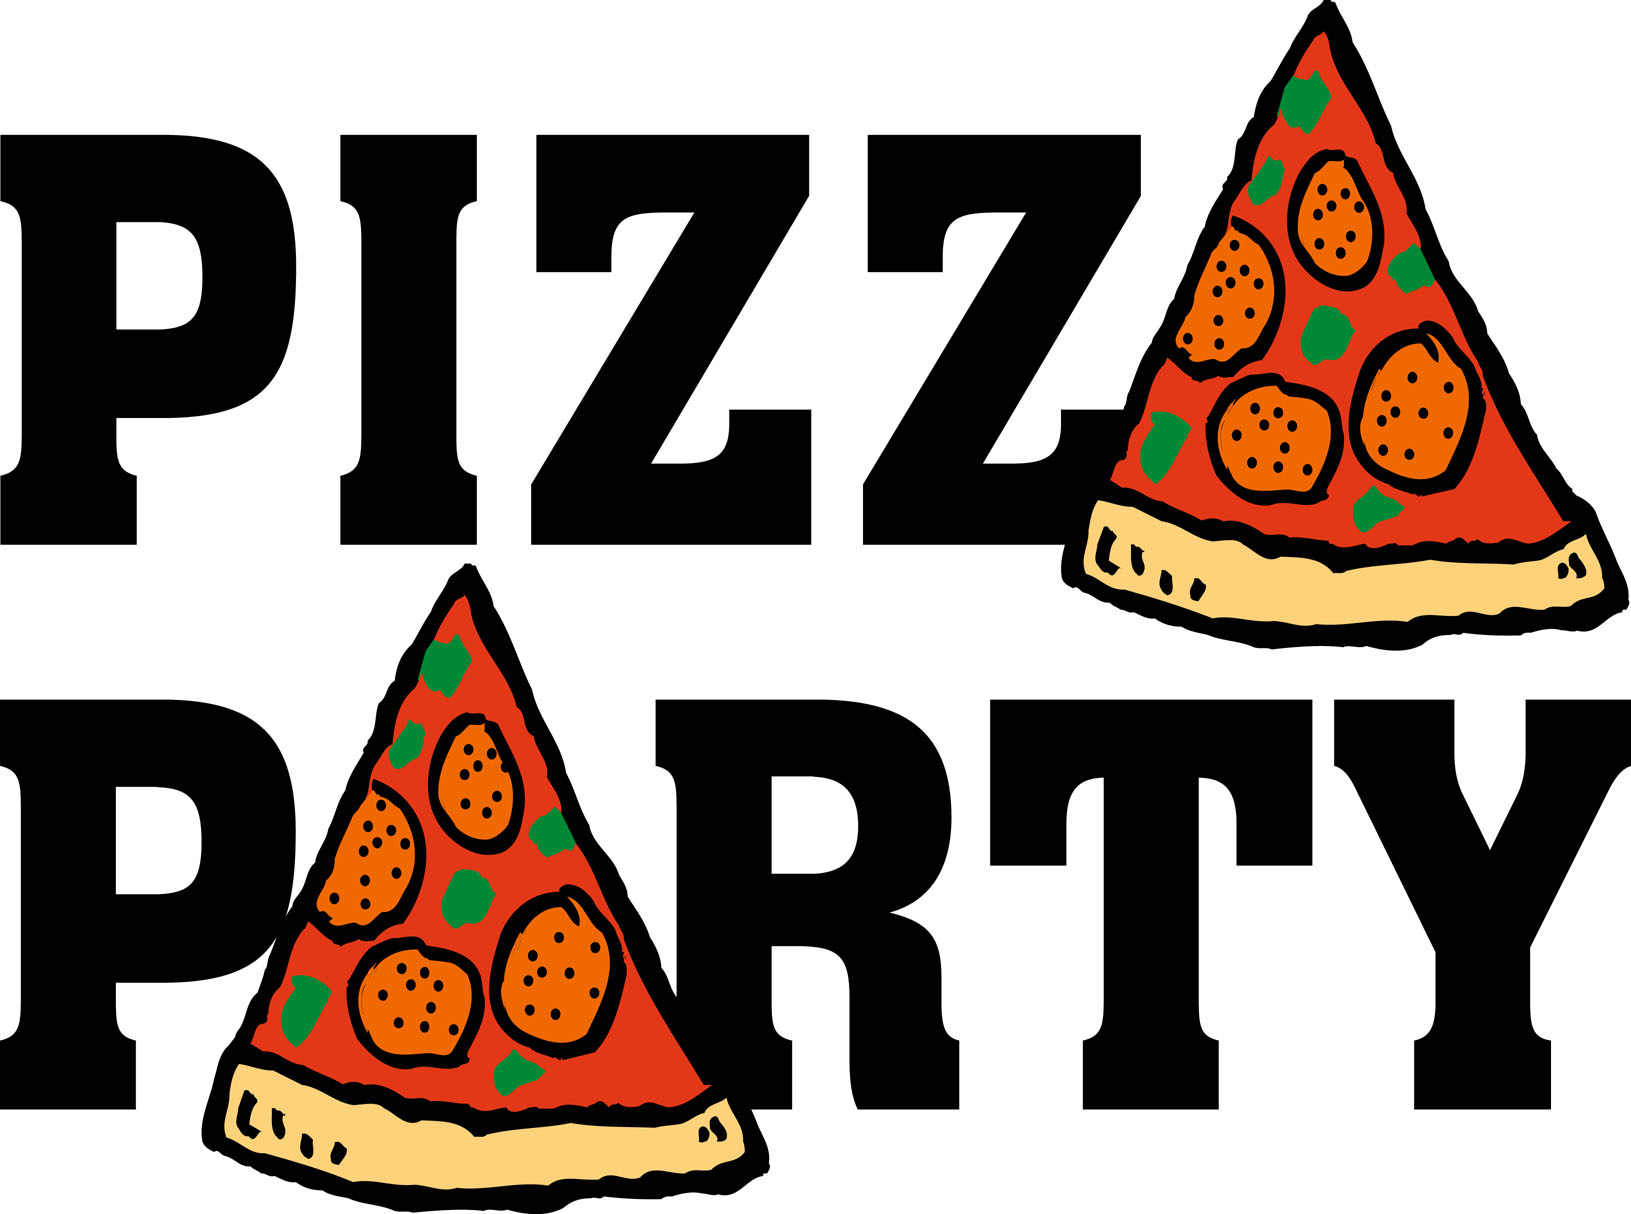 Pizza Party - Clip Art